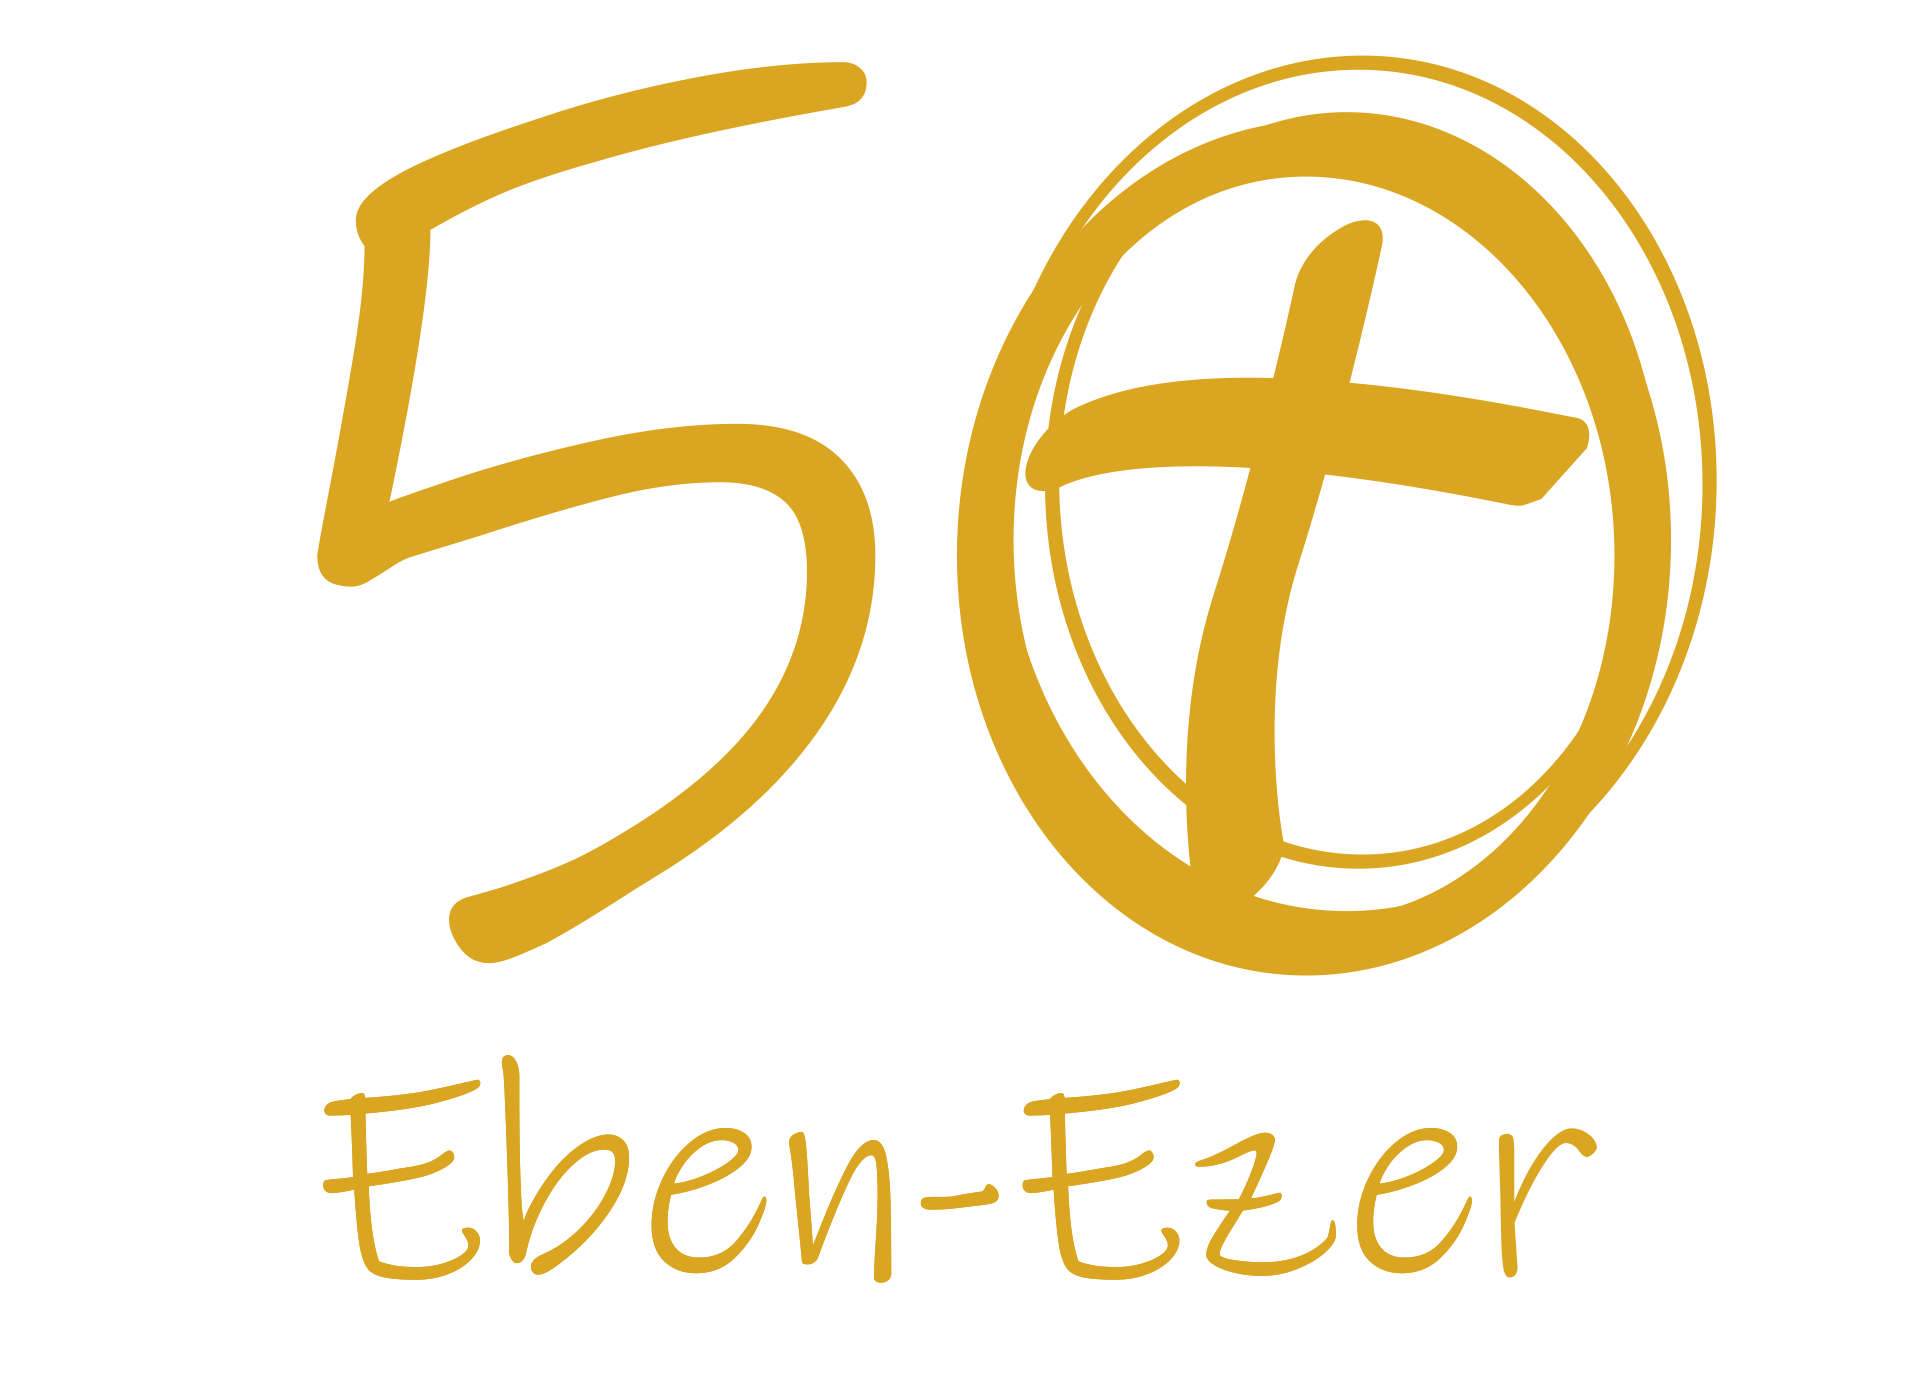 CC Eben-Ezer